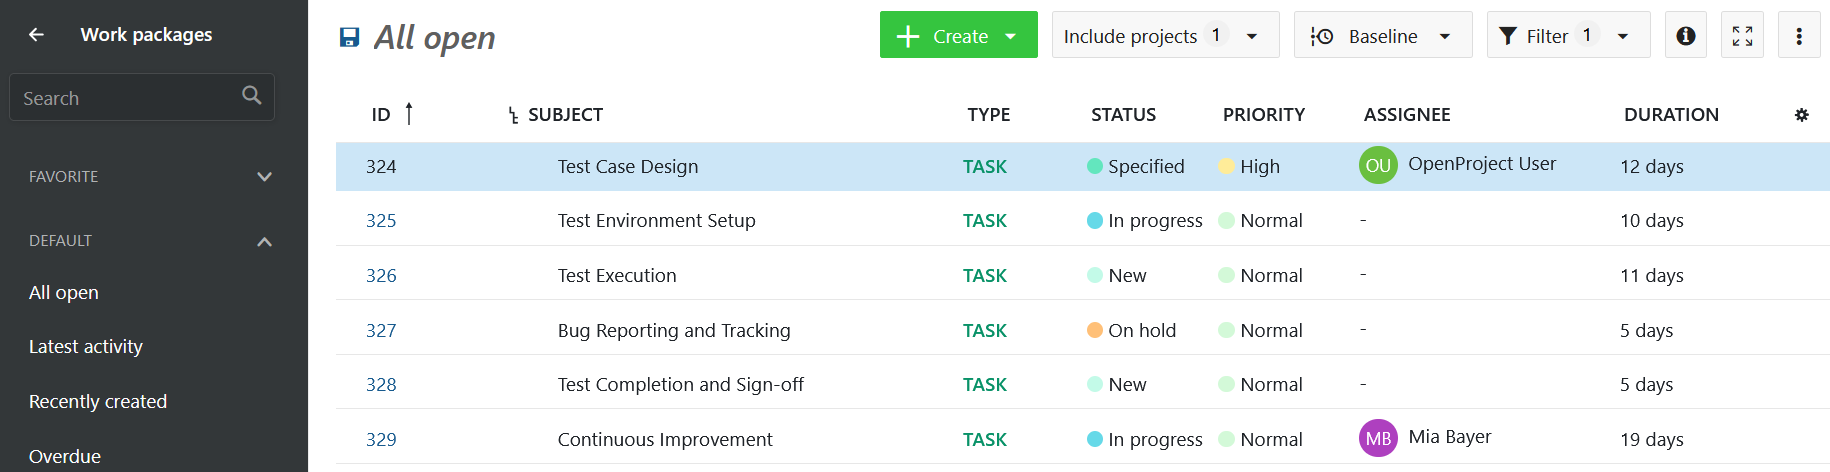 Vista de la tabla de paquetes de trabajo en OpenProject